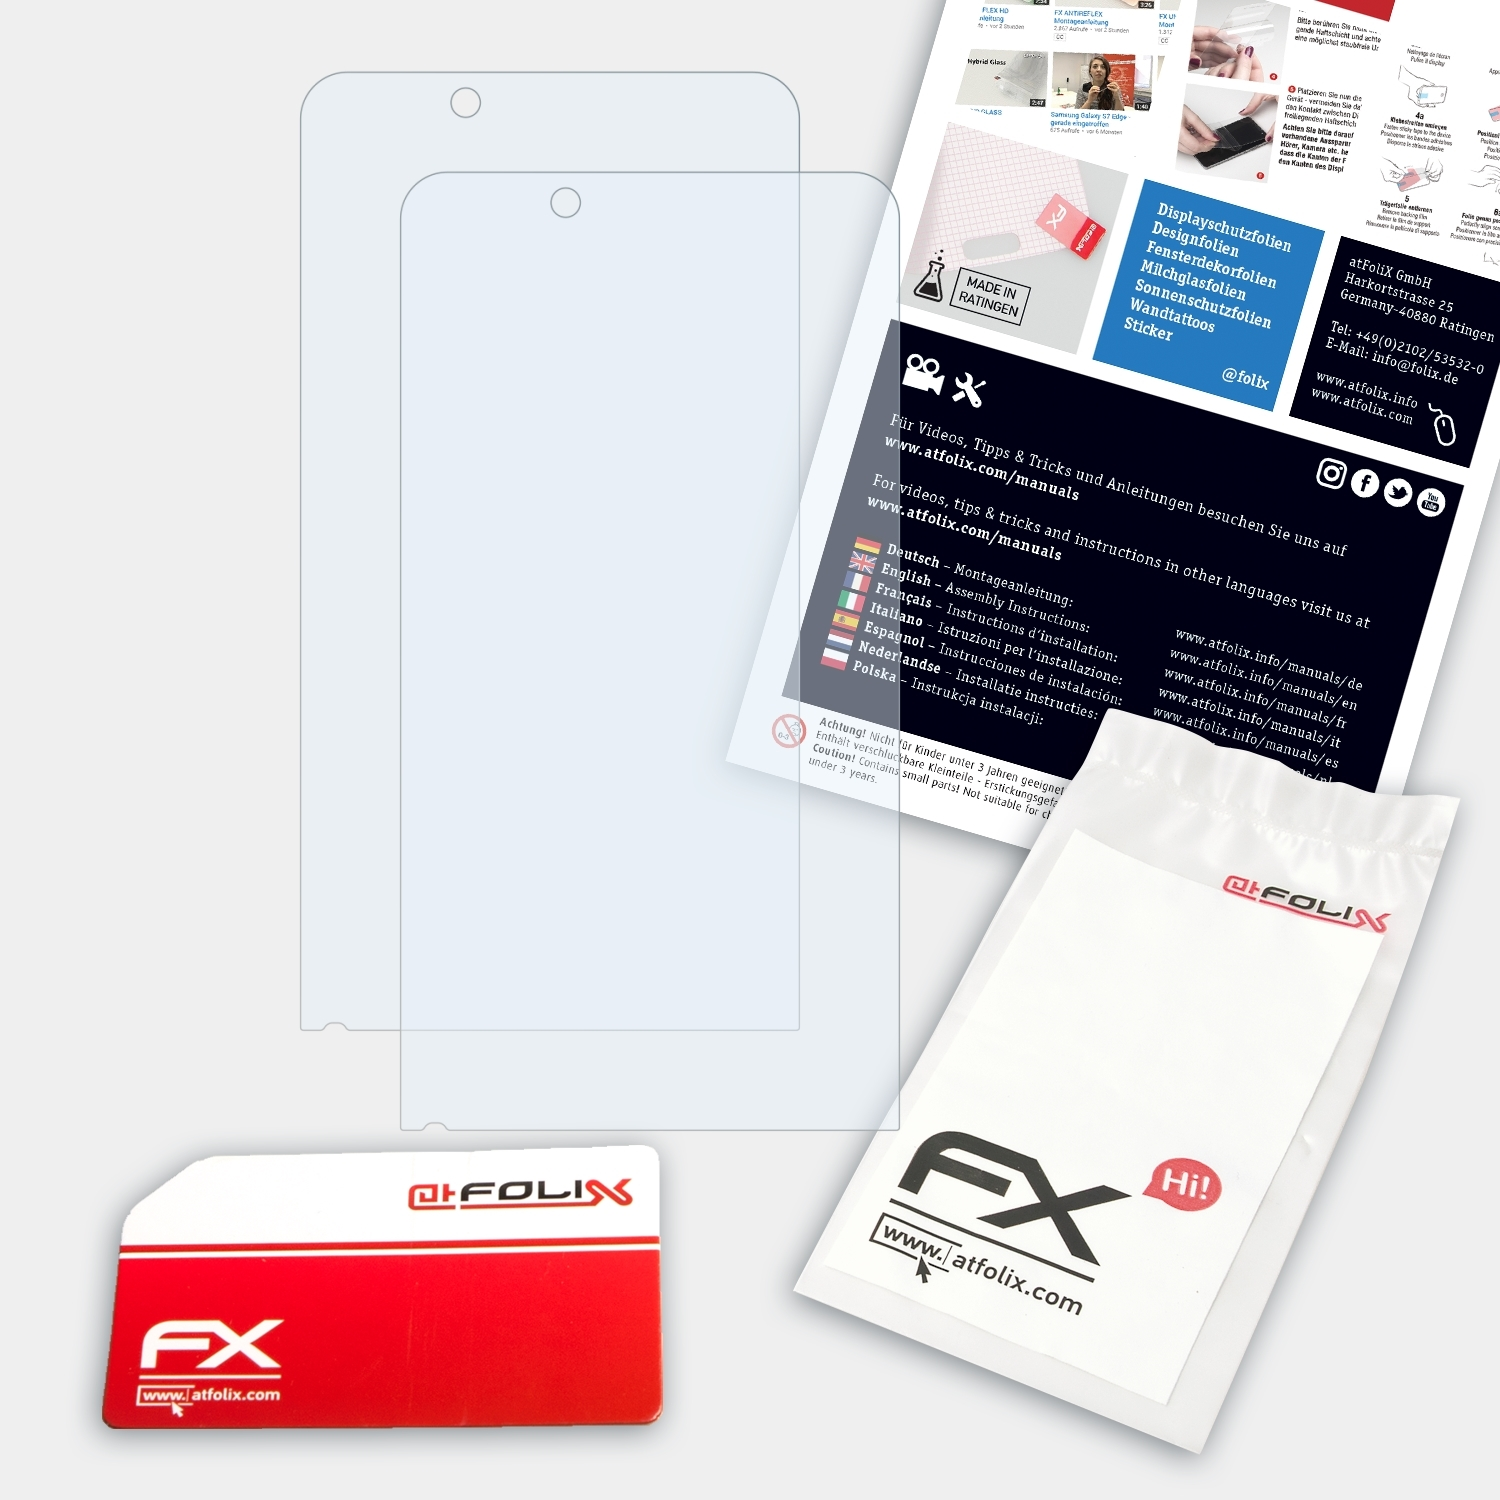 ATFOLIX 2x Handheld FX-Clear X6) Nautiz Displayschutz(für